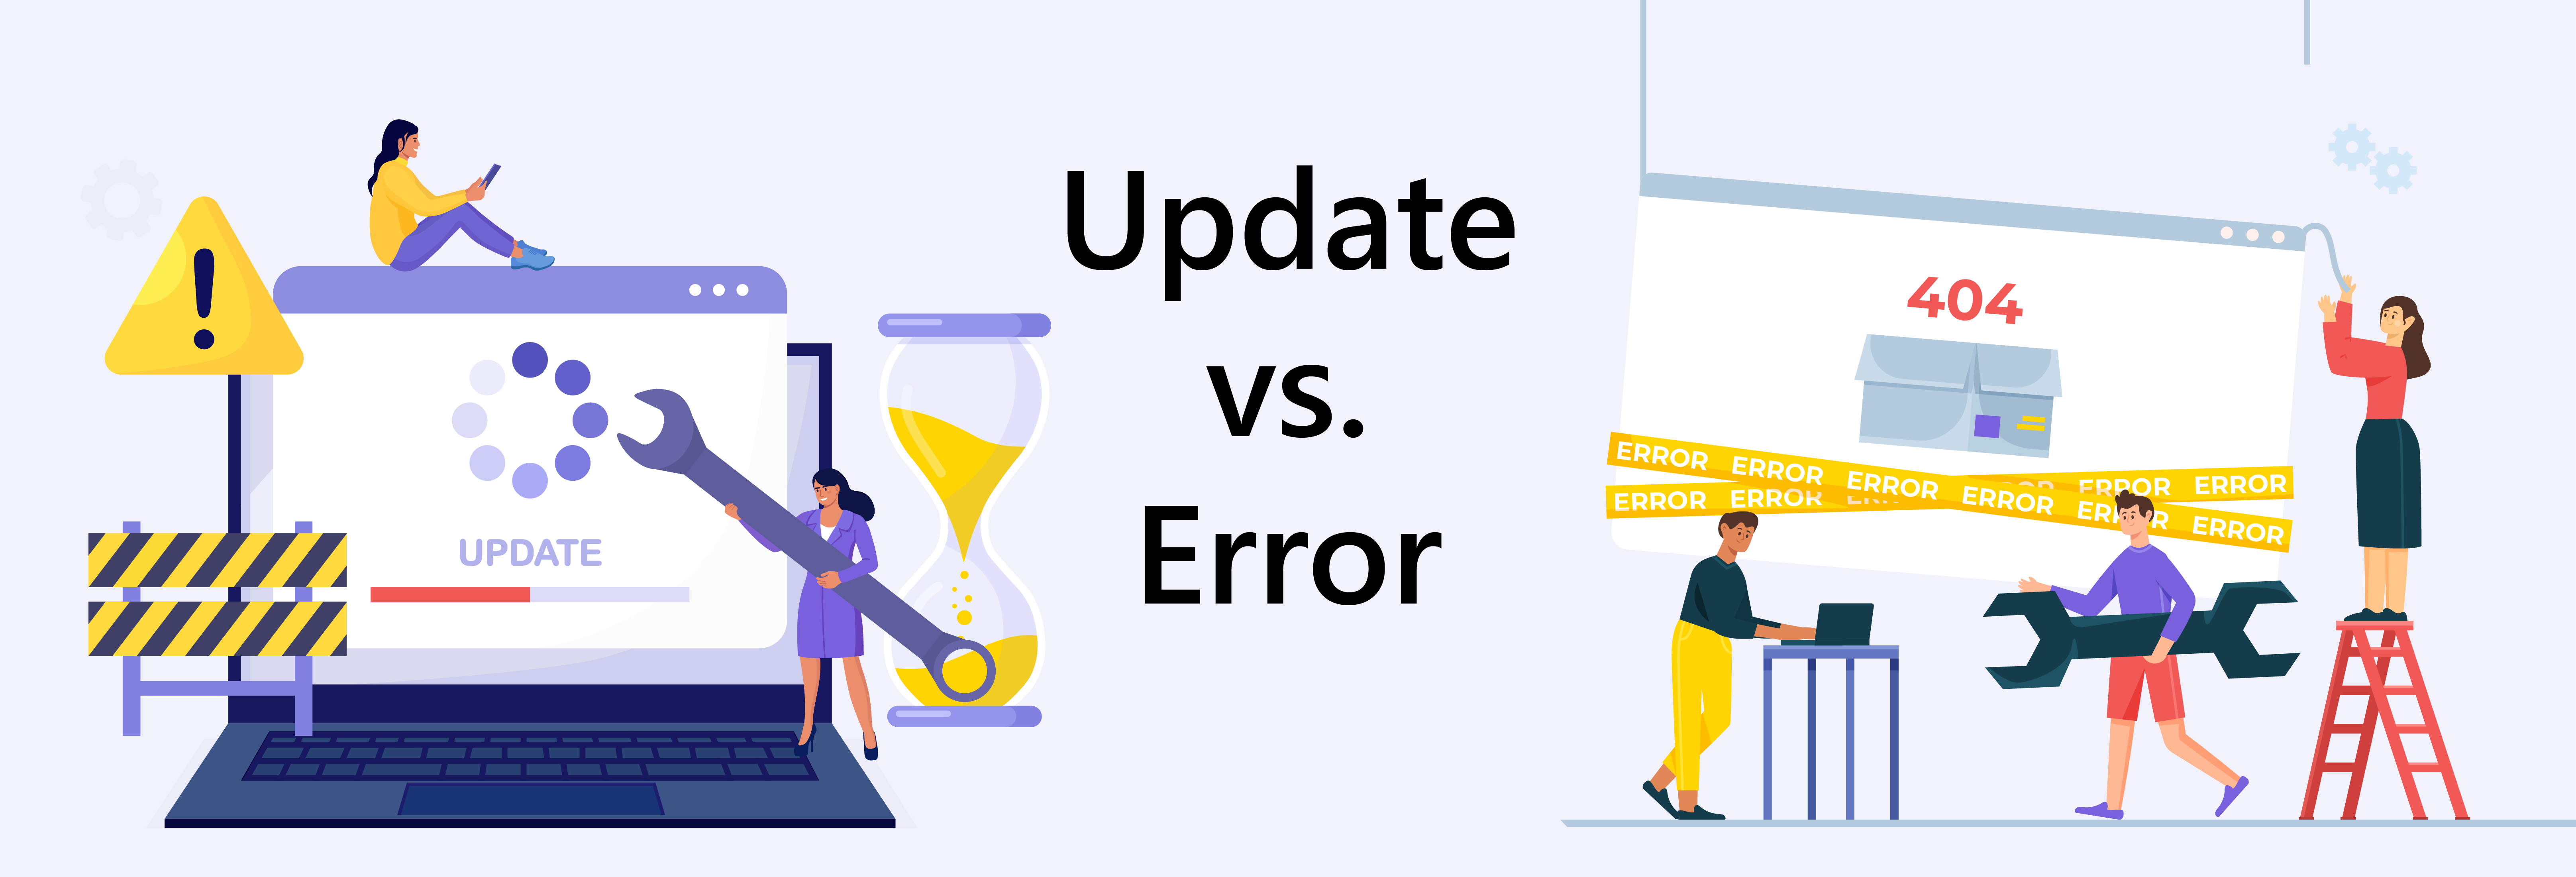 update vs error